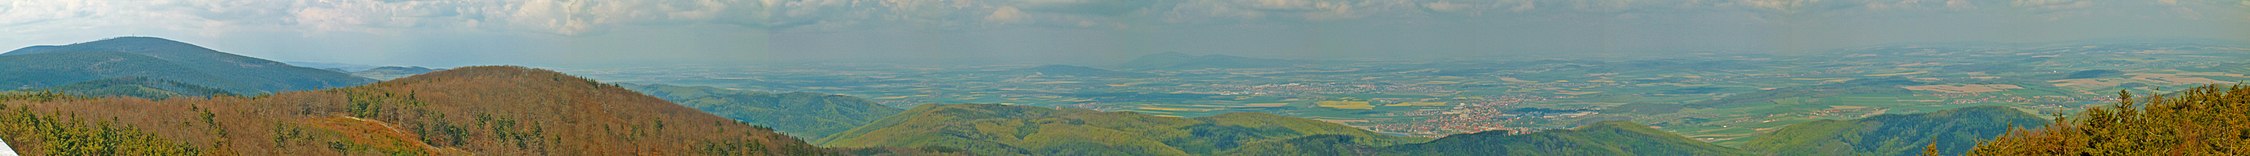 Widok z Kalenicy na Przedgórze Sudeckie. Kolejno od lewej widać Wielką Sowę, w środkowej części Dzierżoniów, a za nim na drugim planie Ślęża, dalej w kierunku wschodnim dobrze widoczne jest miasto Bielawa